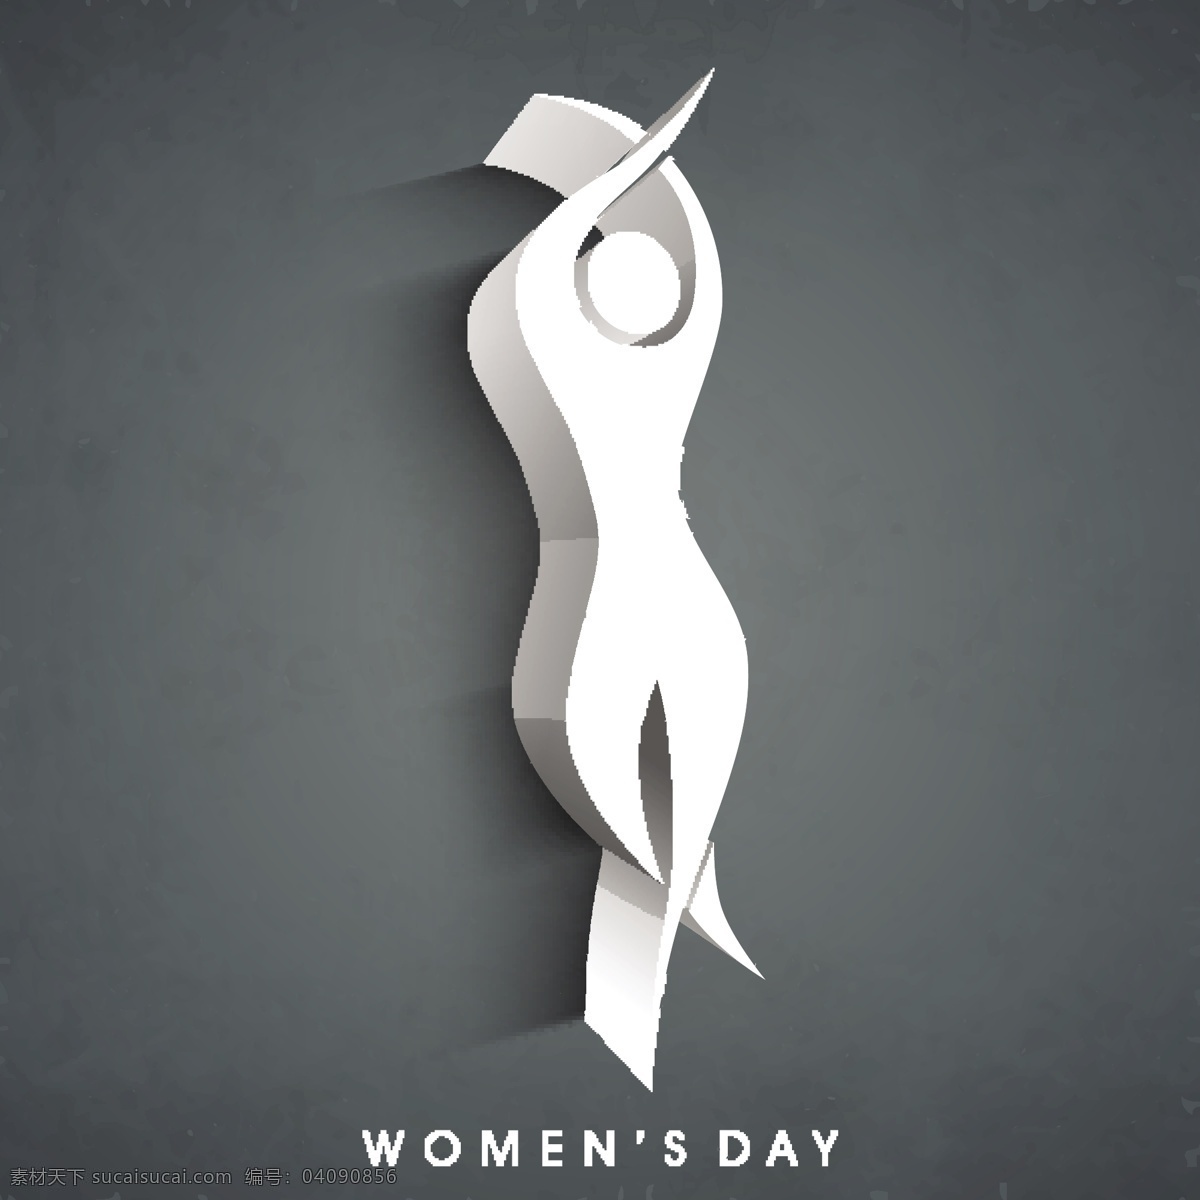 三八妇女节 贺卡 海 报以 灰色 背景 舞姿 女人 剪影 矢量图 日常生活